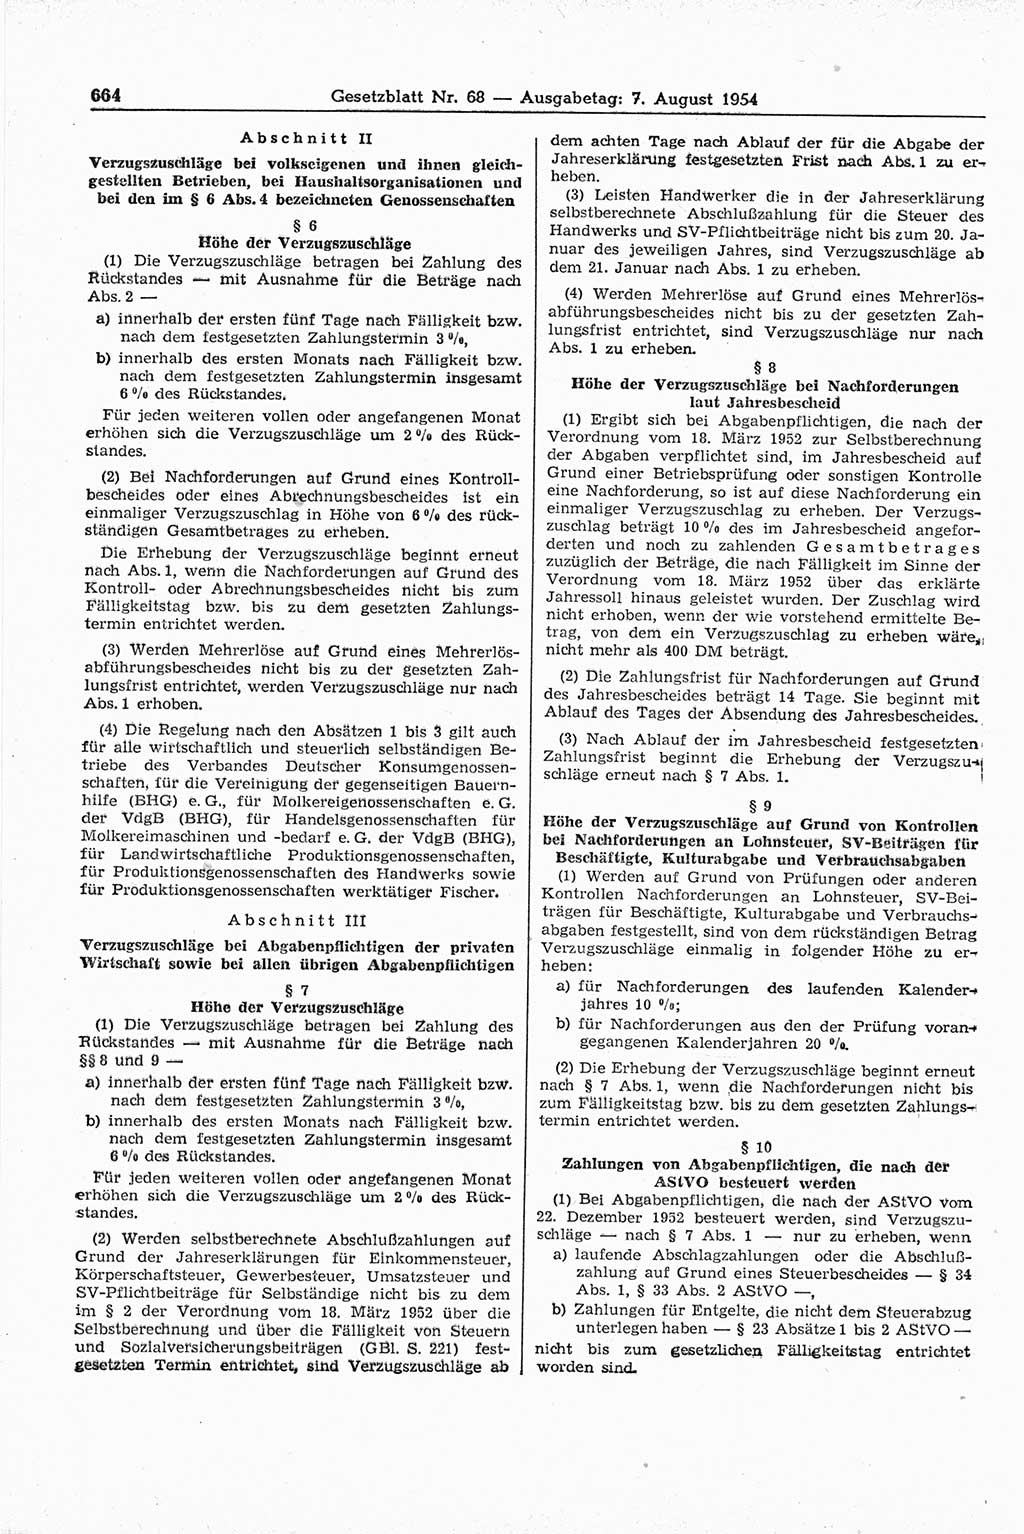 Gesetzblatt (GBl.) der Deutschen Demokratischen Republik (DDR) 1954, Seite 664 (GBl. DDR 1954, S. 664)